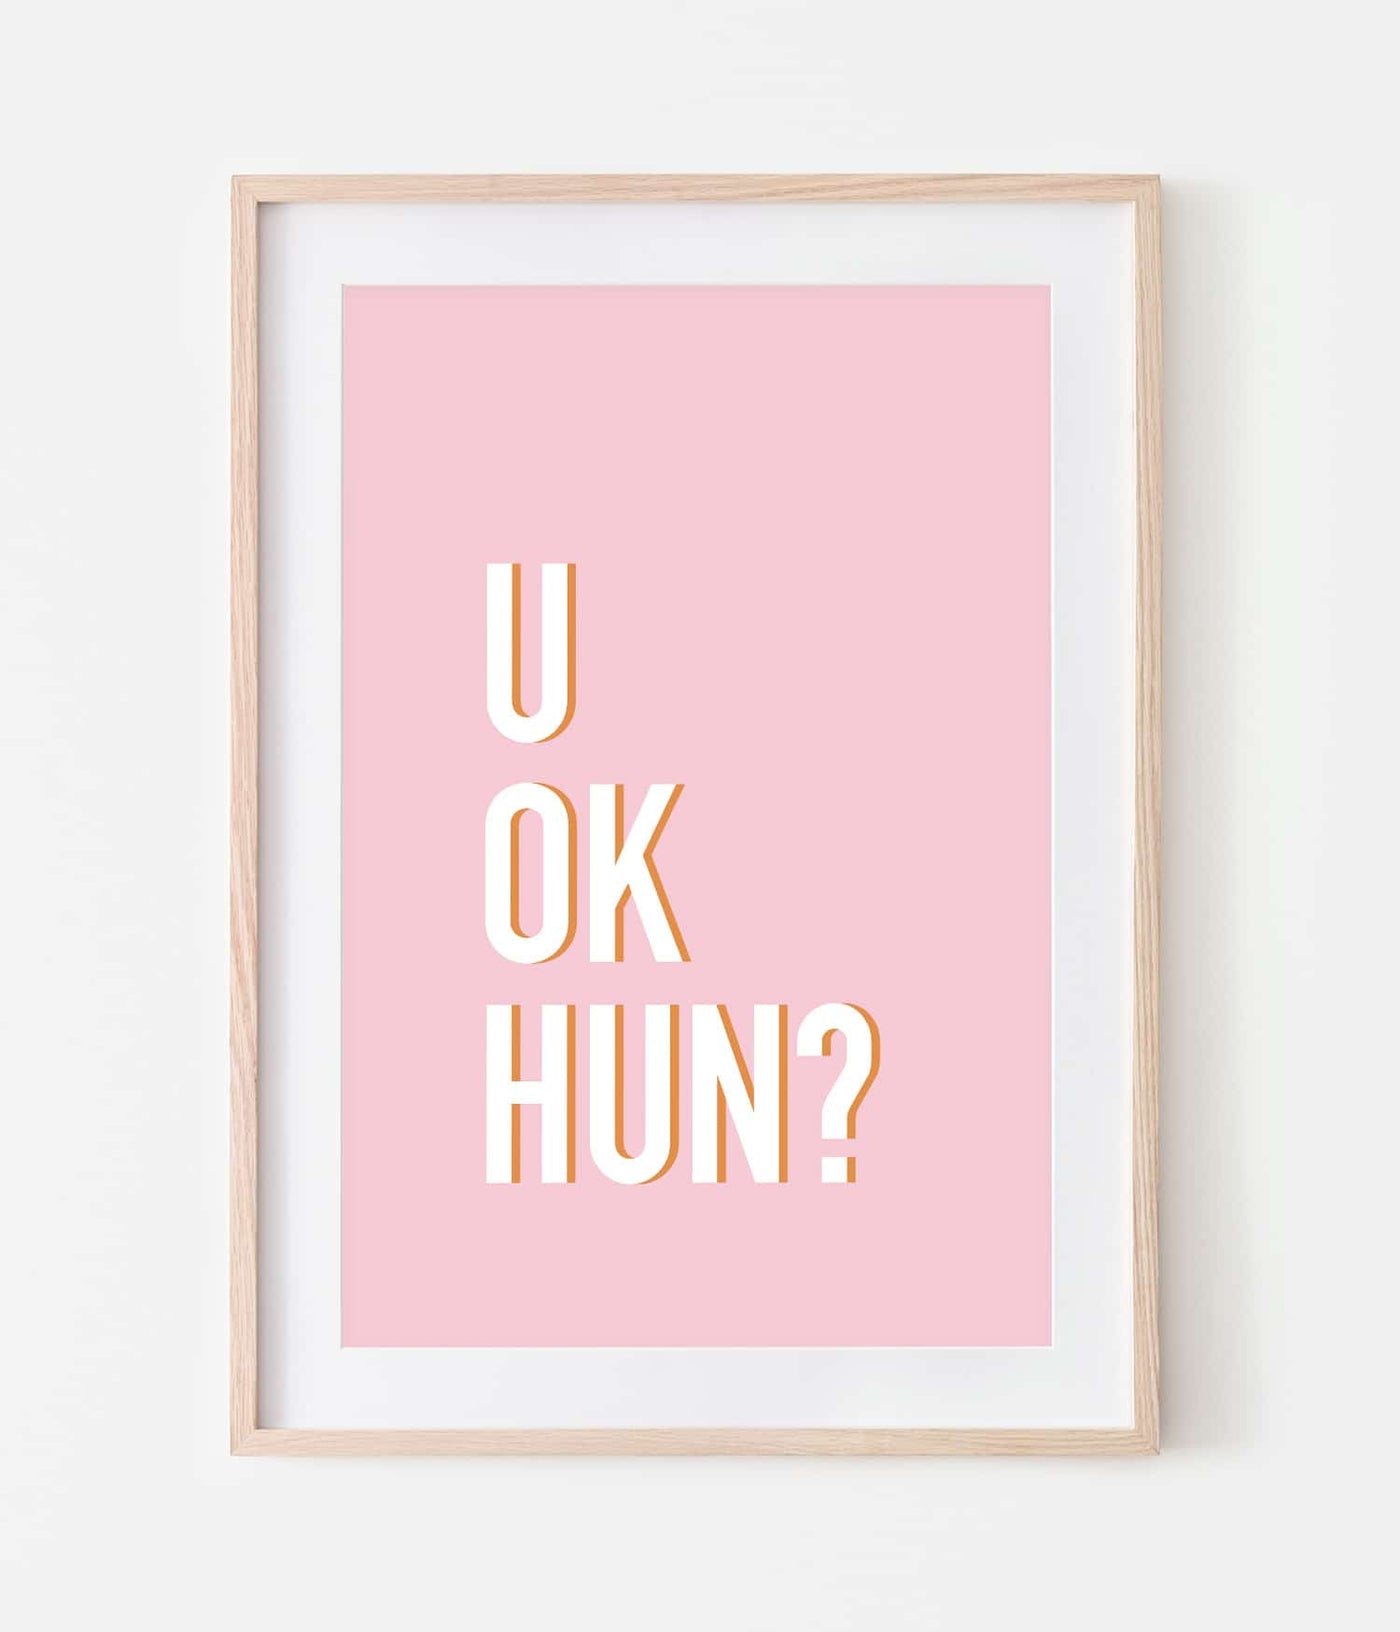 'U ok hun?' Print